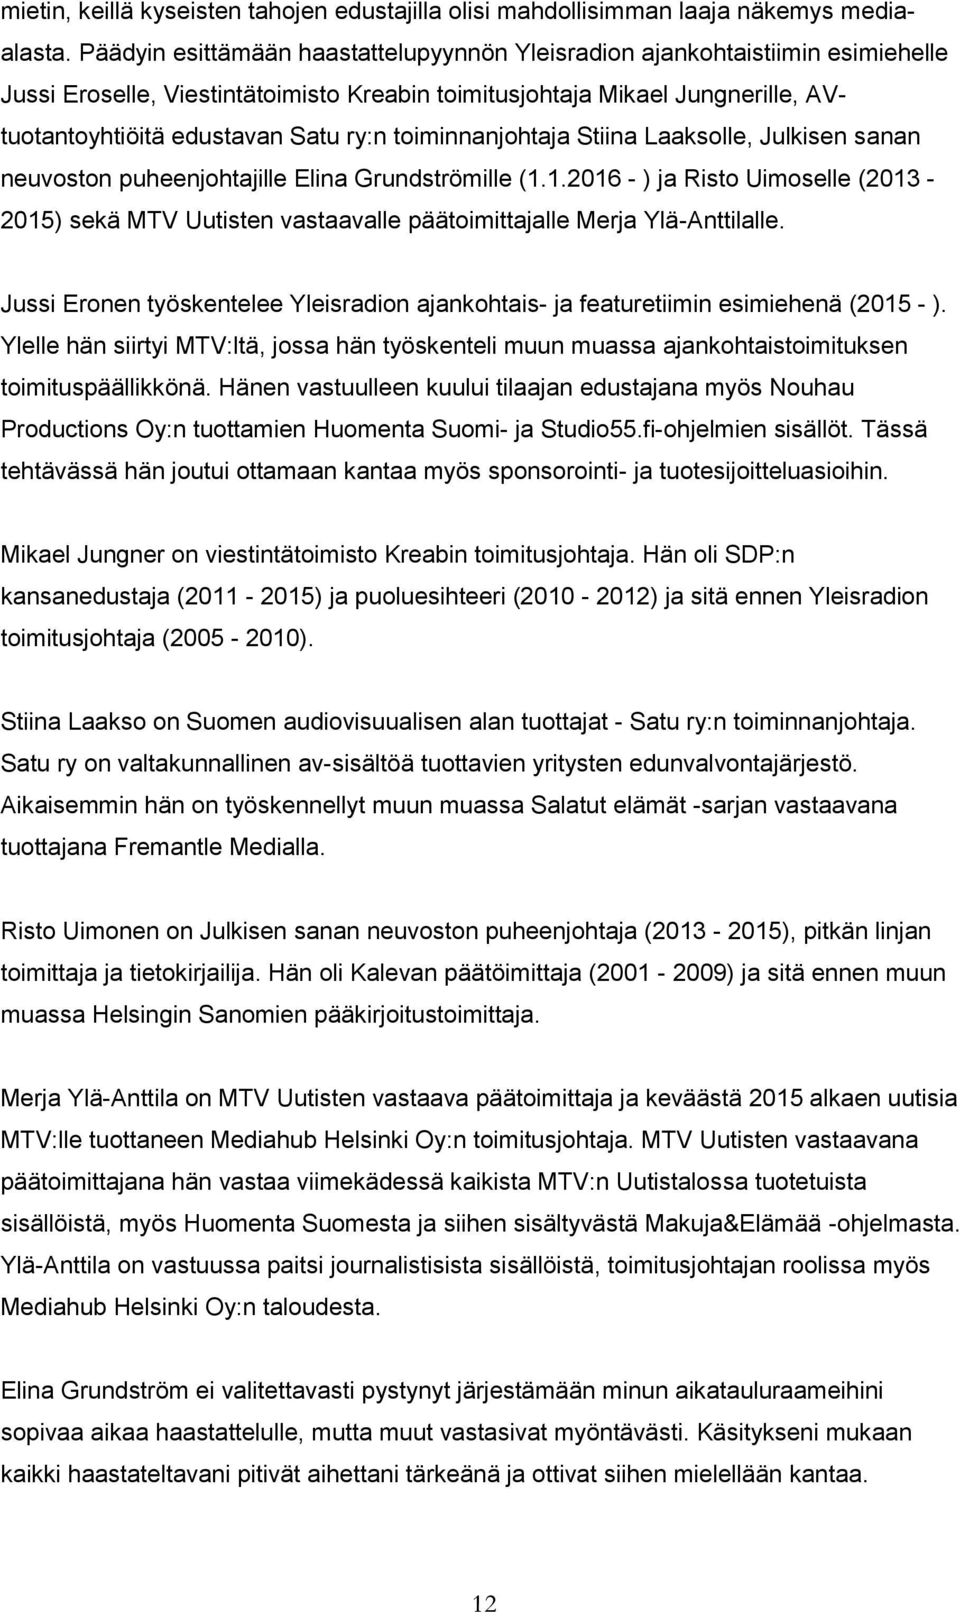 toiminnanjohtaja Stiina Laaksolle, Julkisen sanan neuvoston puheenjohtajille Elina Grundströmille (1.